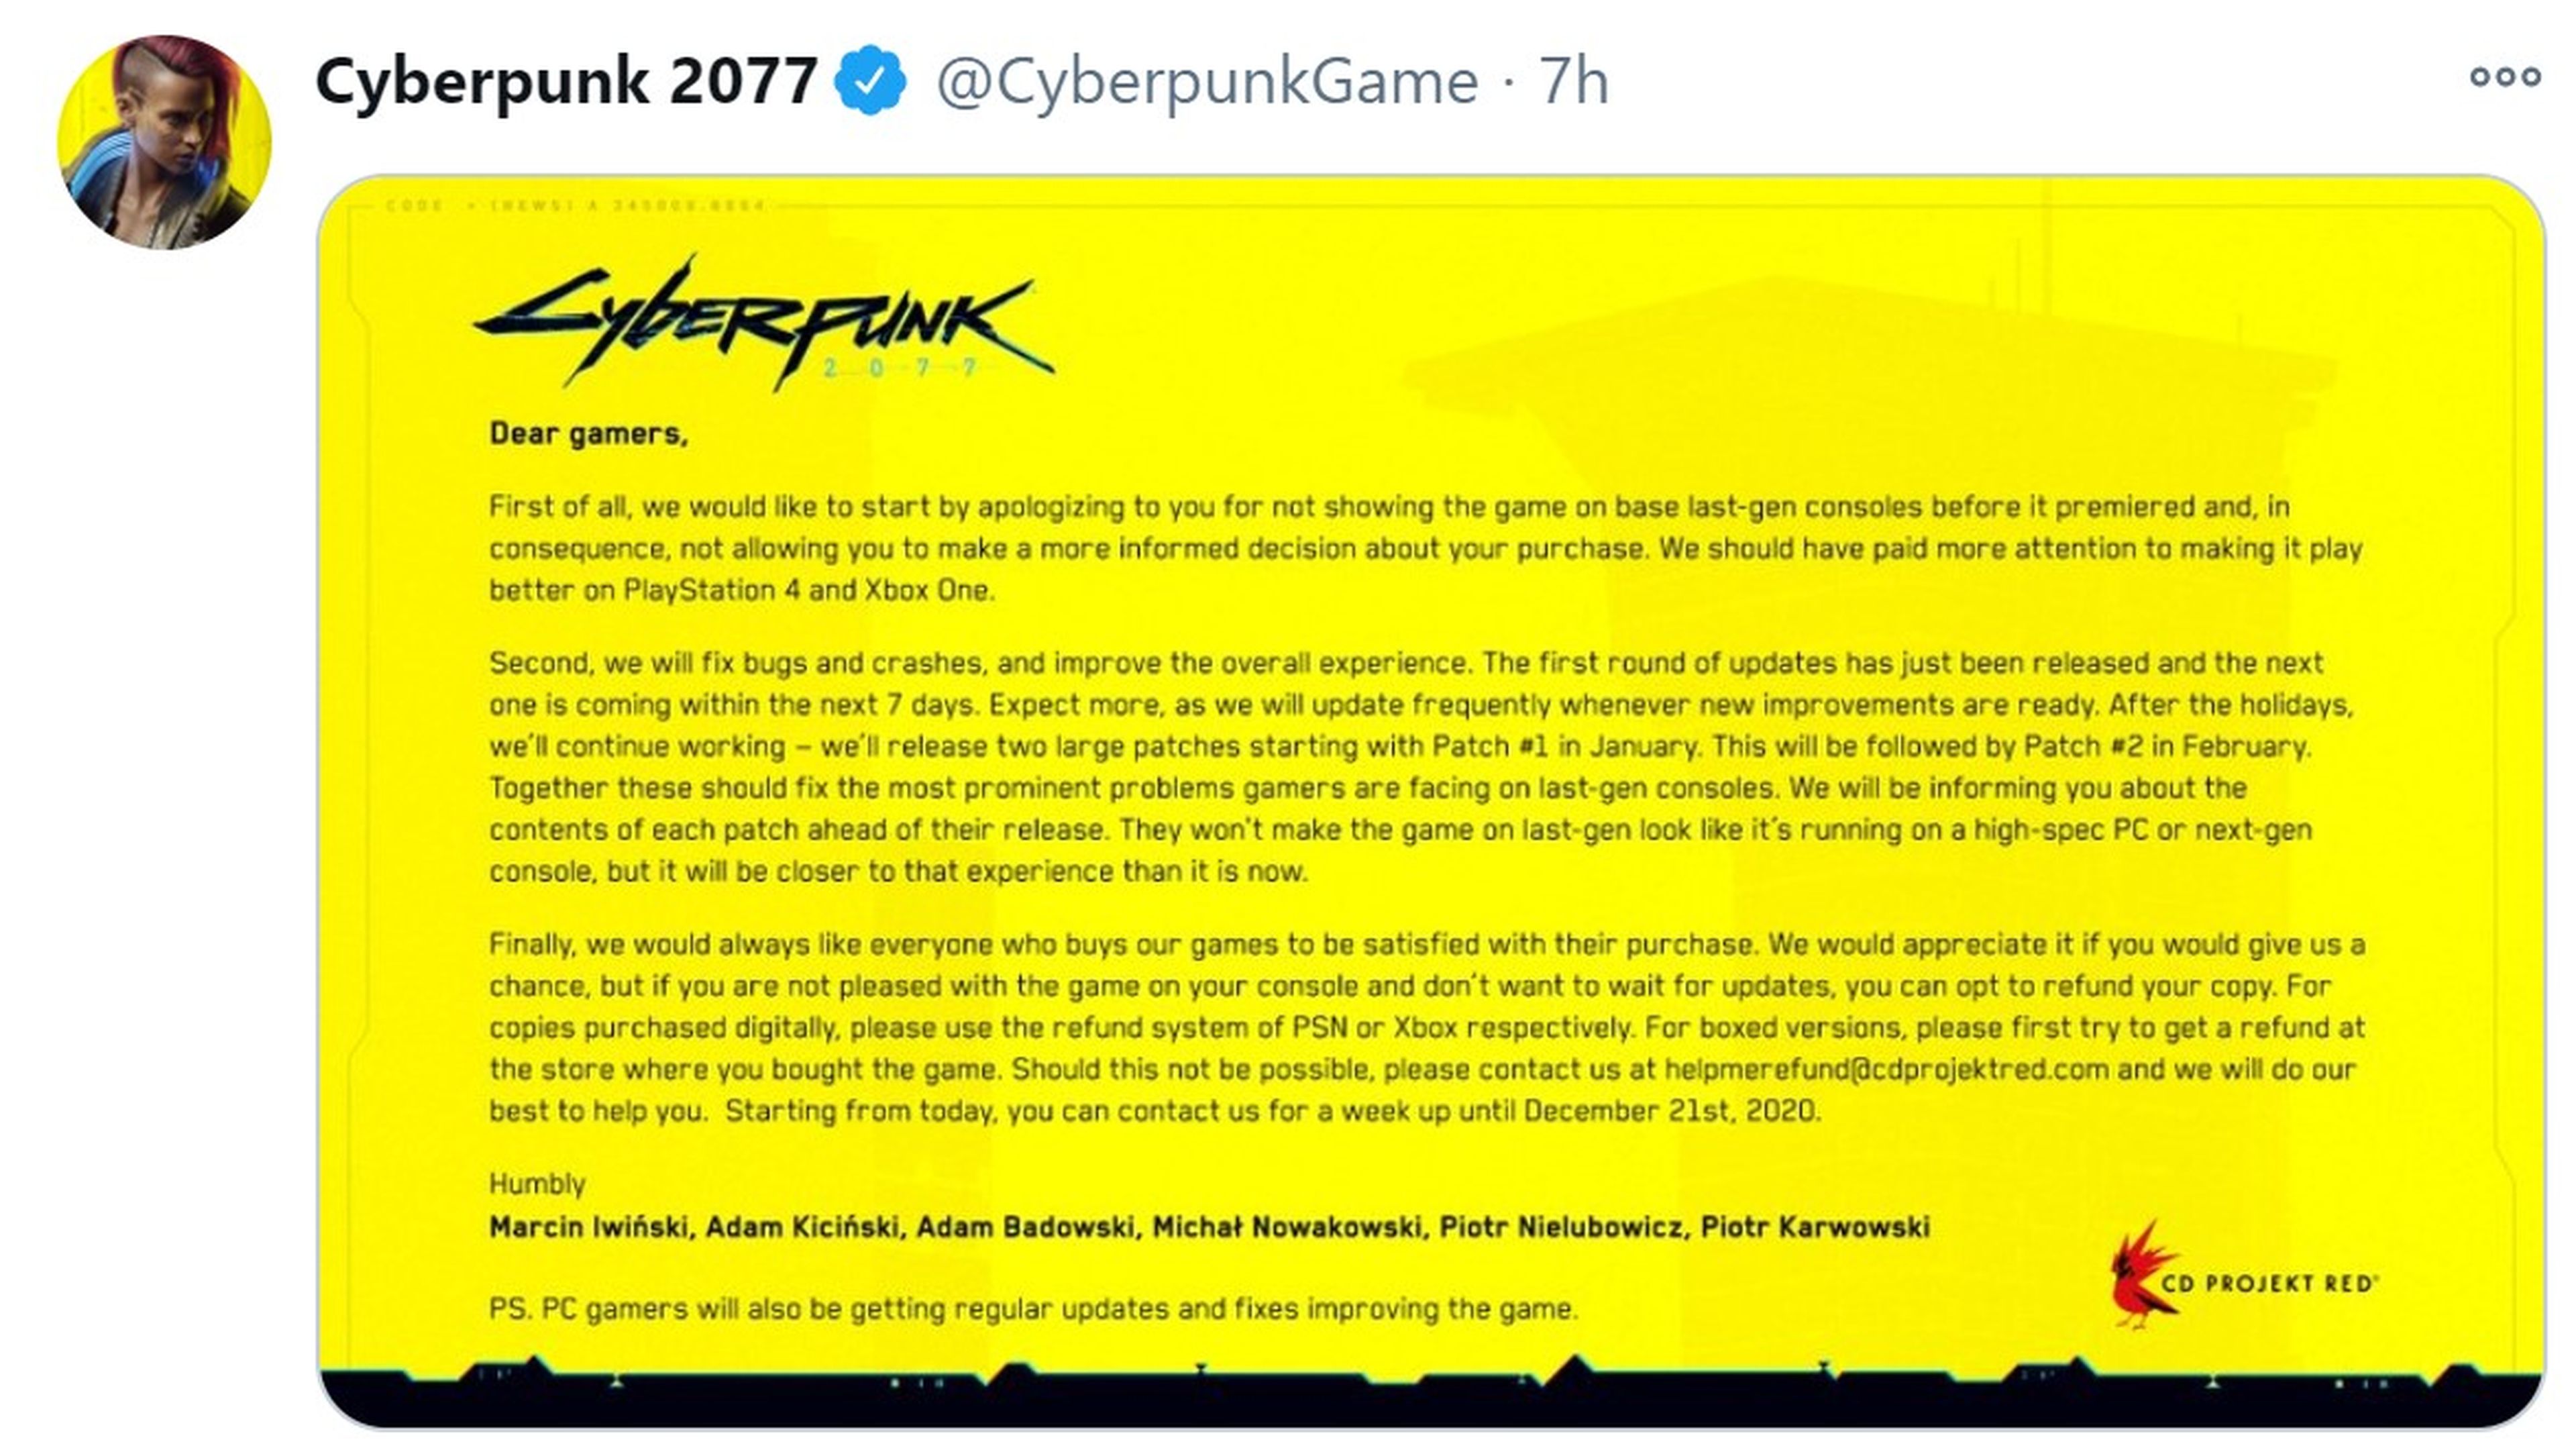 Comunicado de Cyberpunk 2077 en Twitter